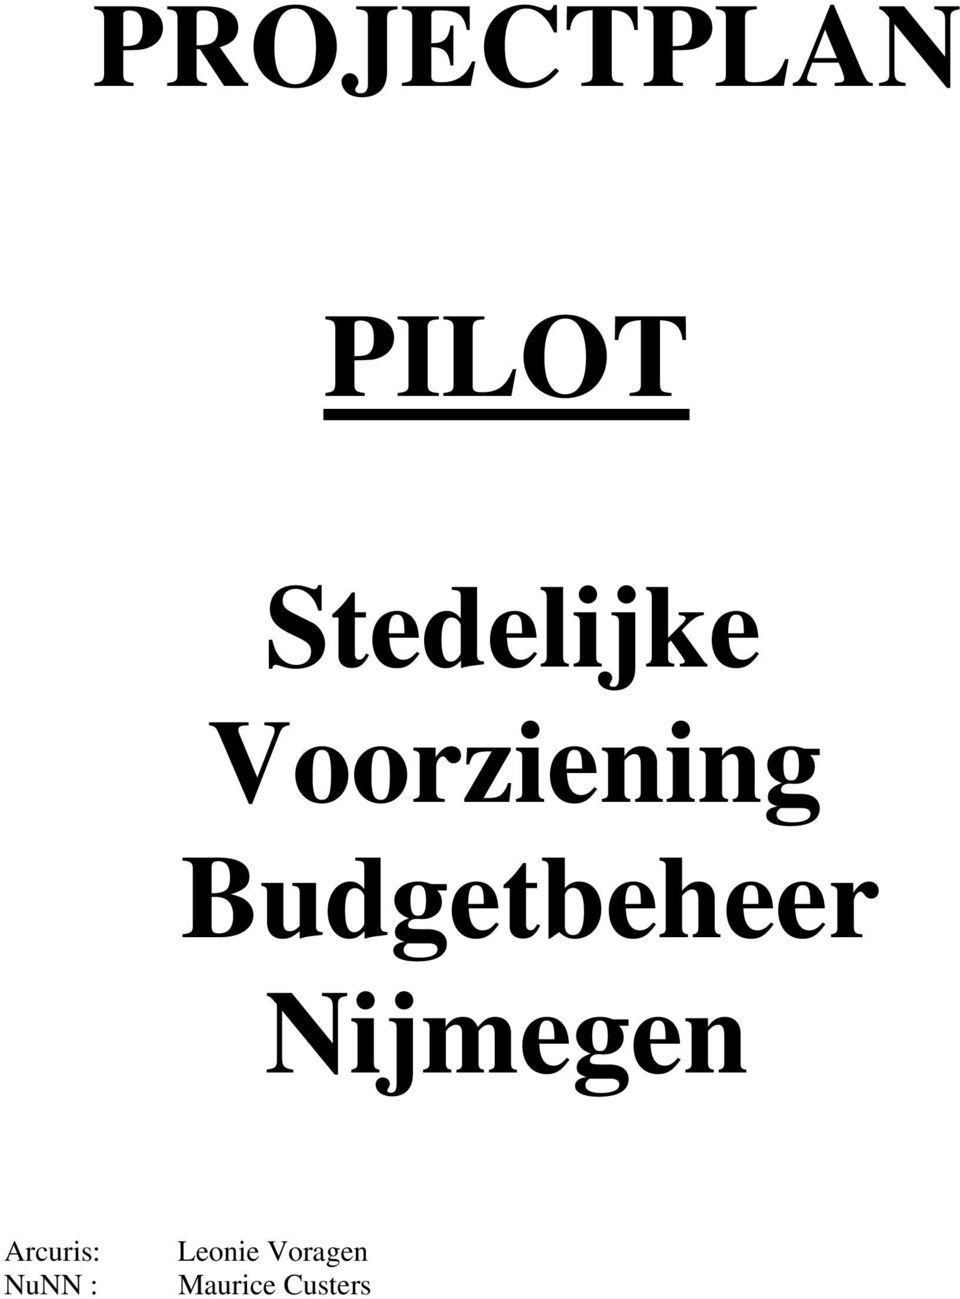 Budgetbeheer Nijmegen